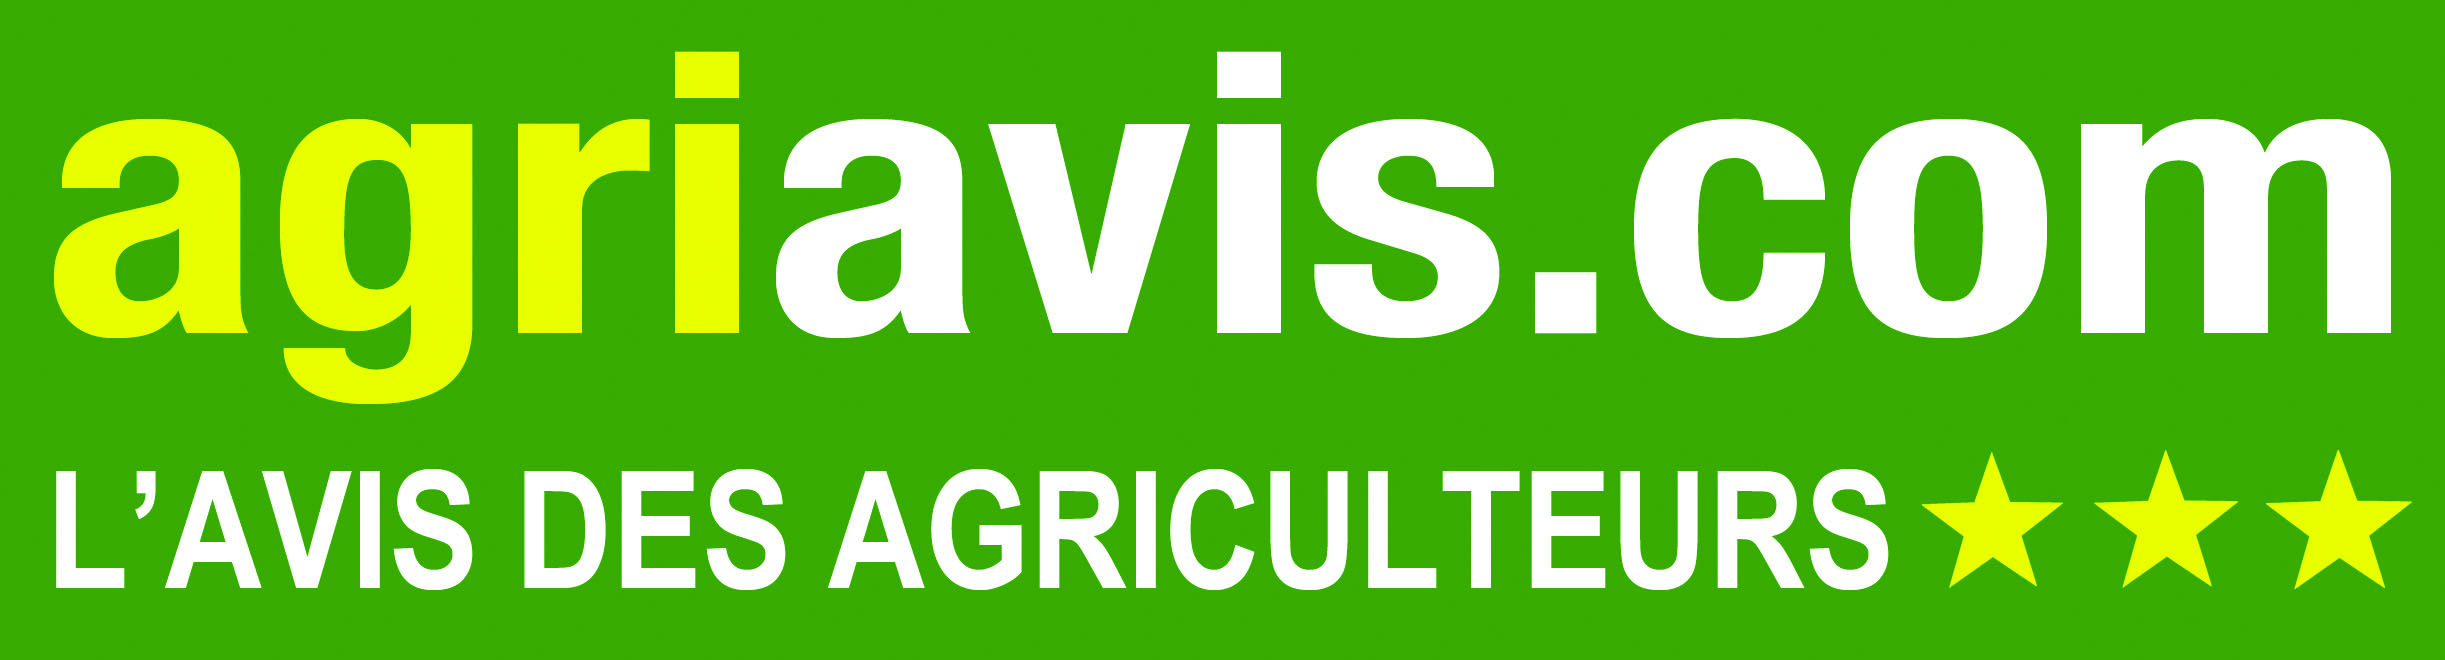 logo de Agriavis.com